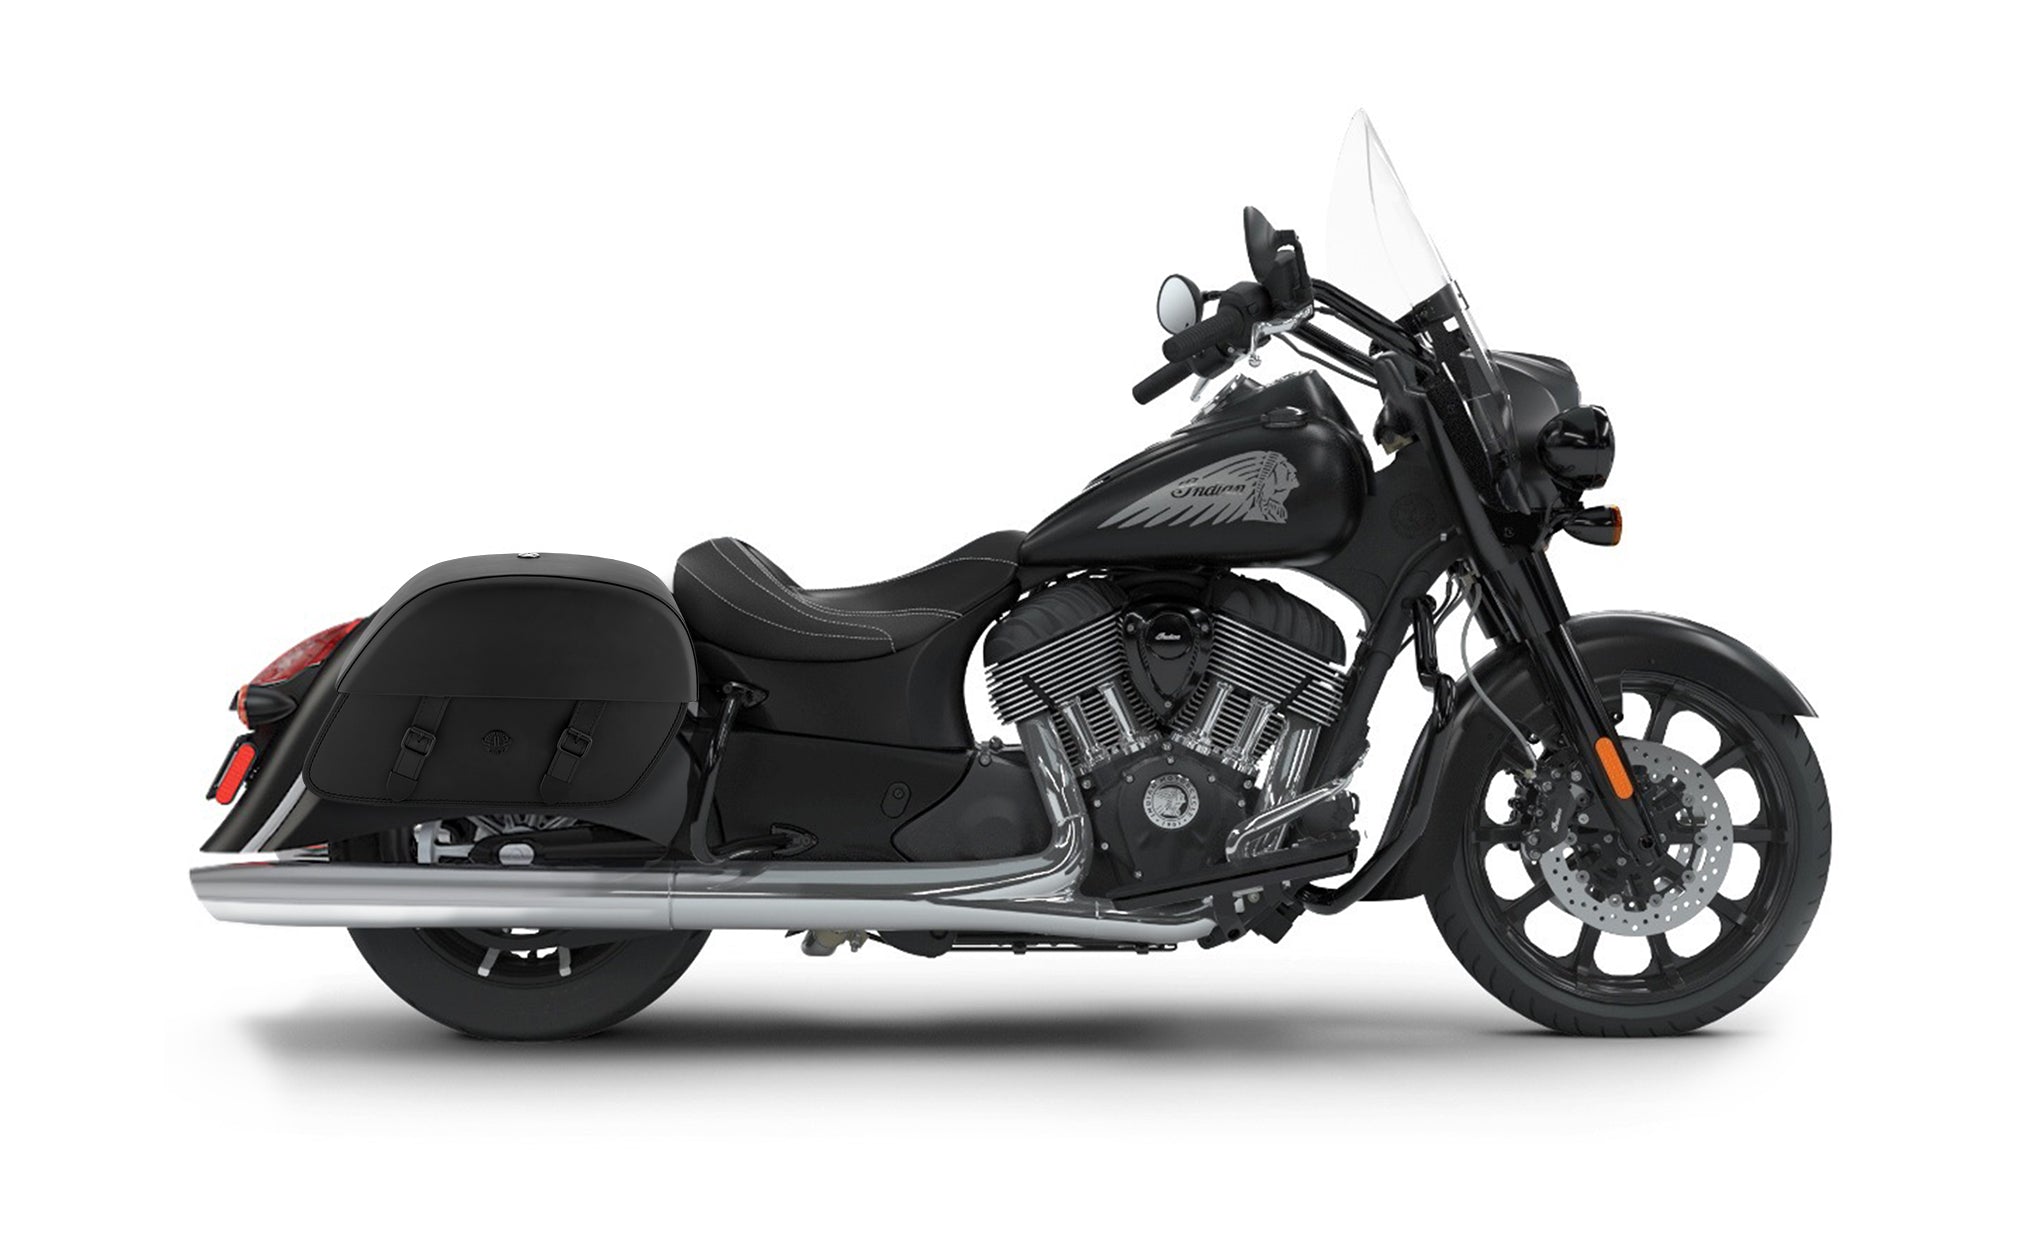 Viking Baelor Large Indian Springfield Darkhorse Leather Motorcycle Saddlebags on Bike Photo @expand